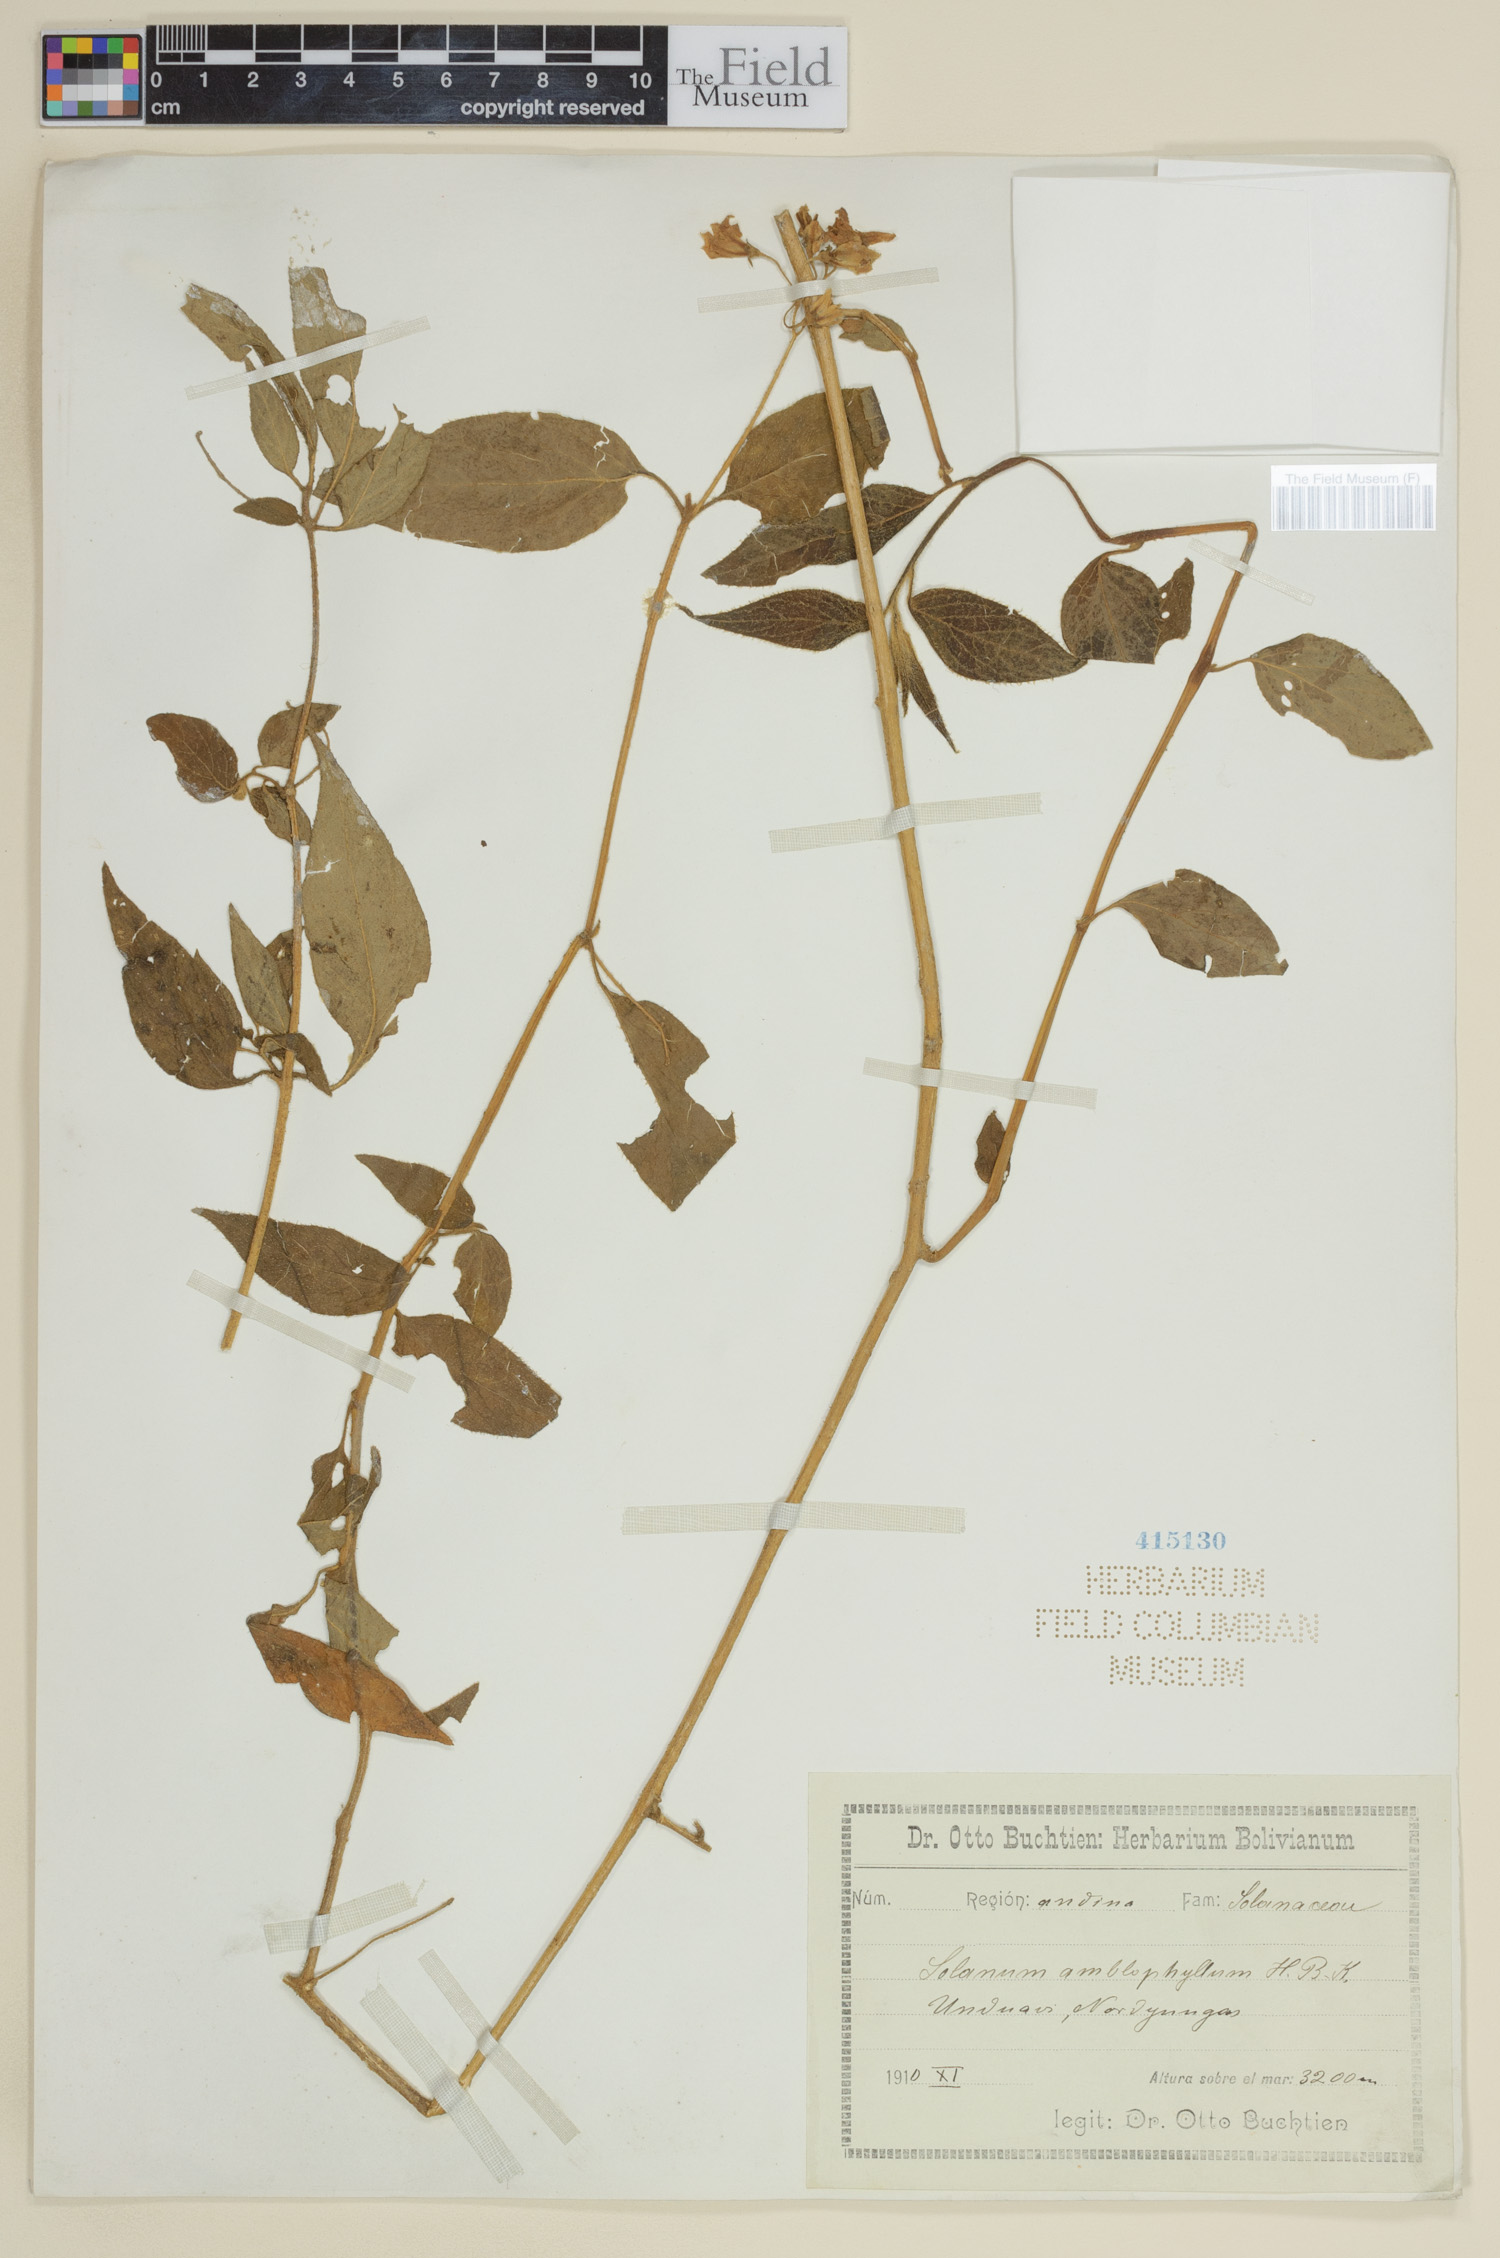 Solanum amblophyllum image